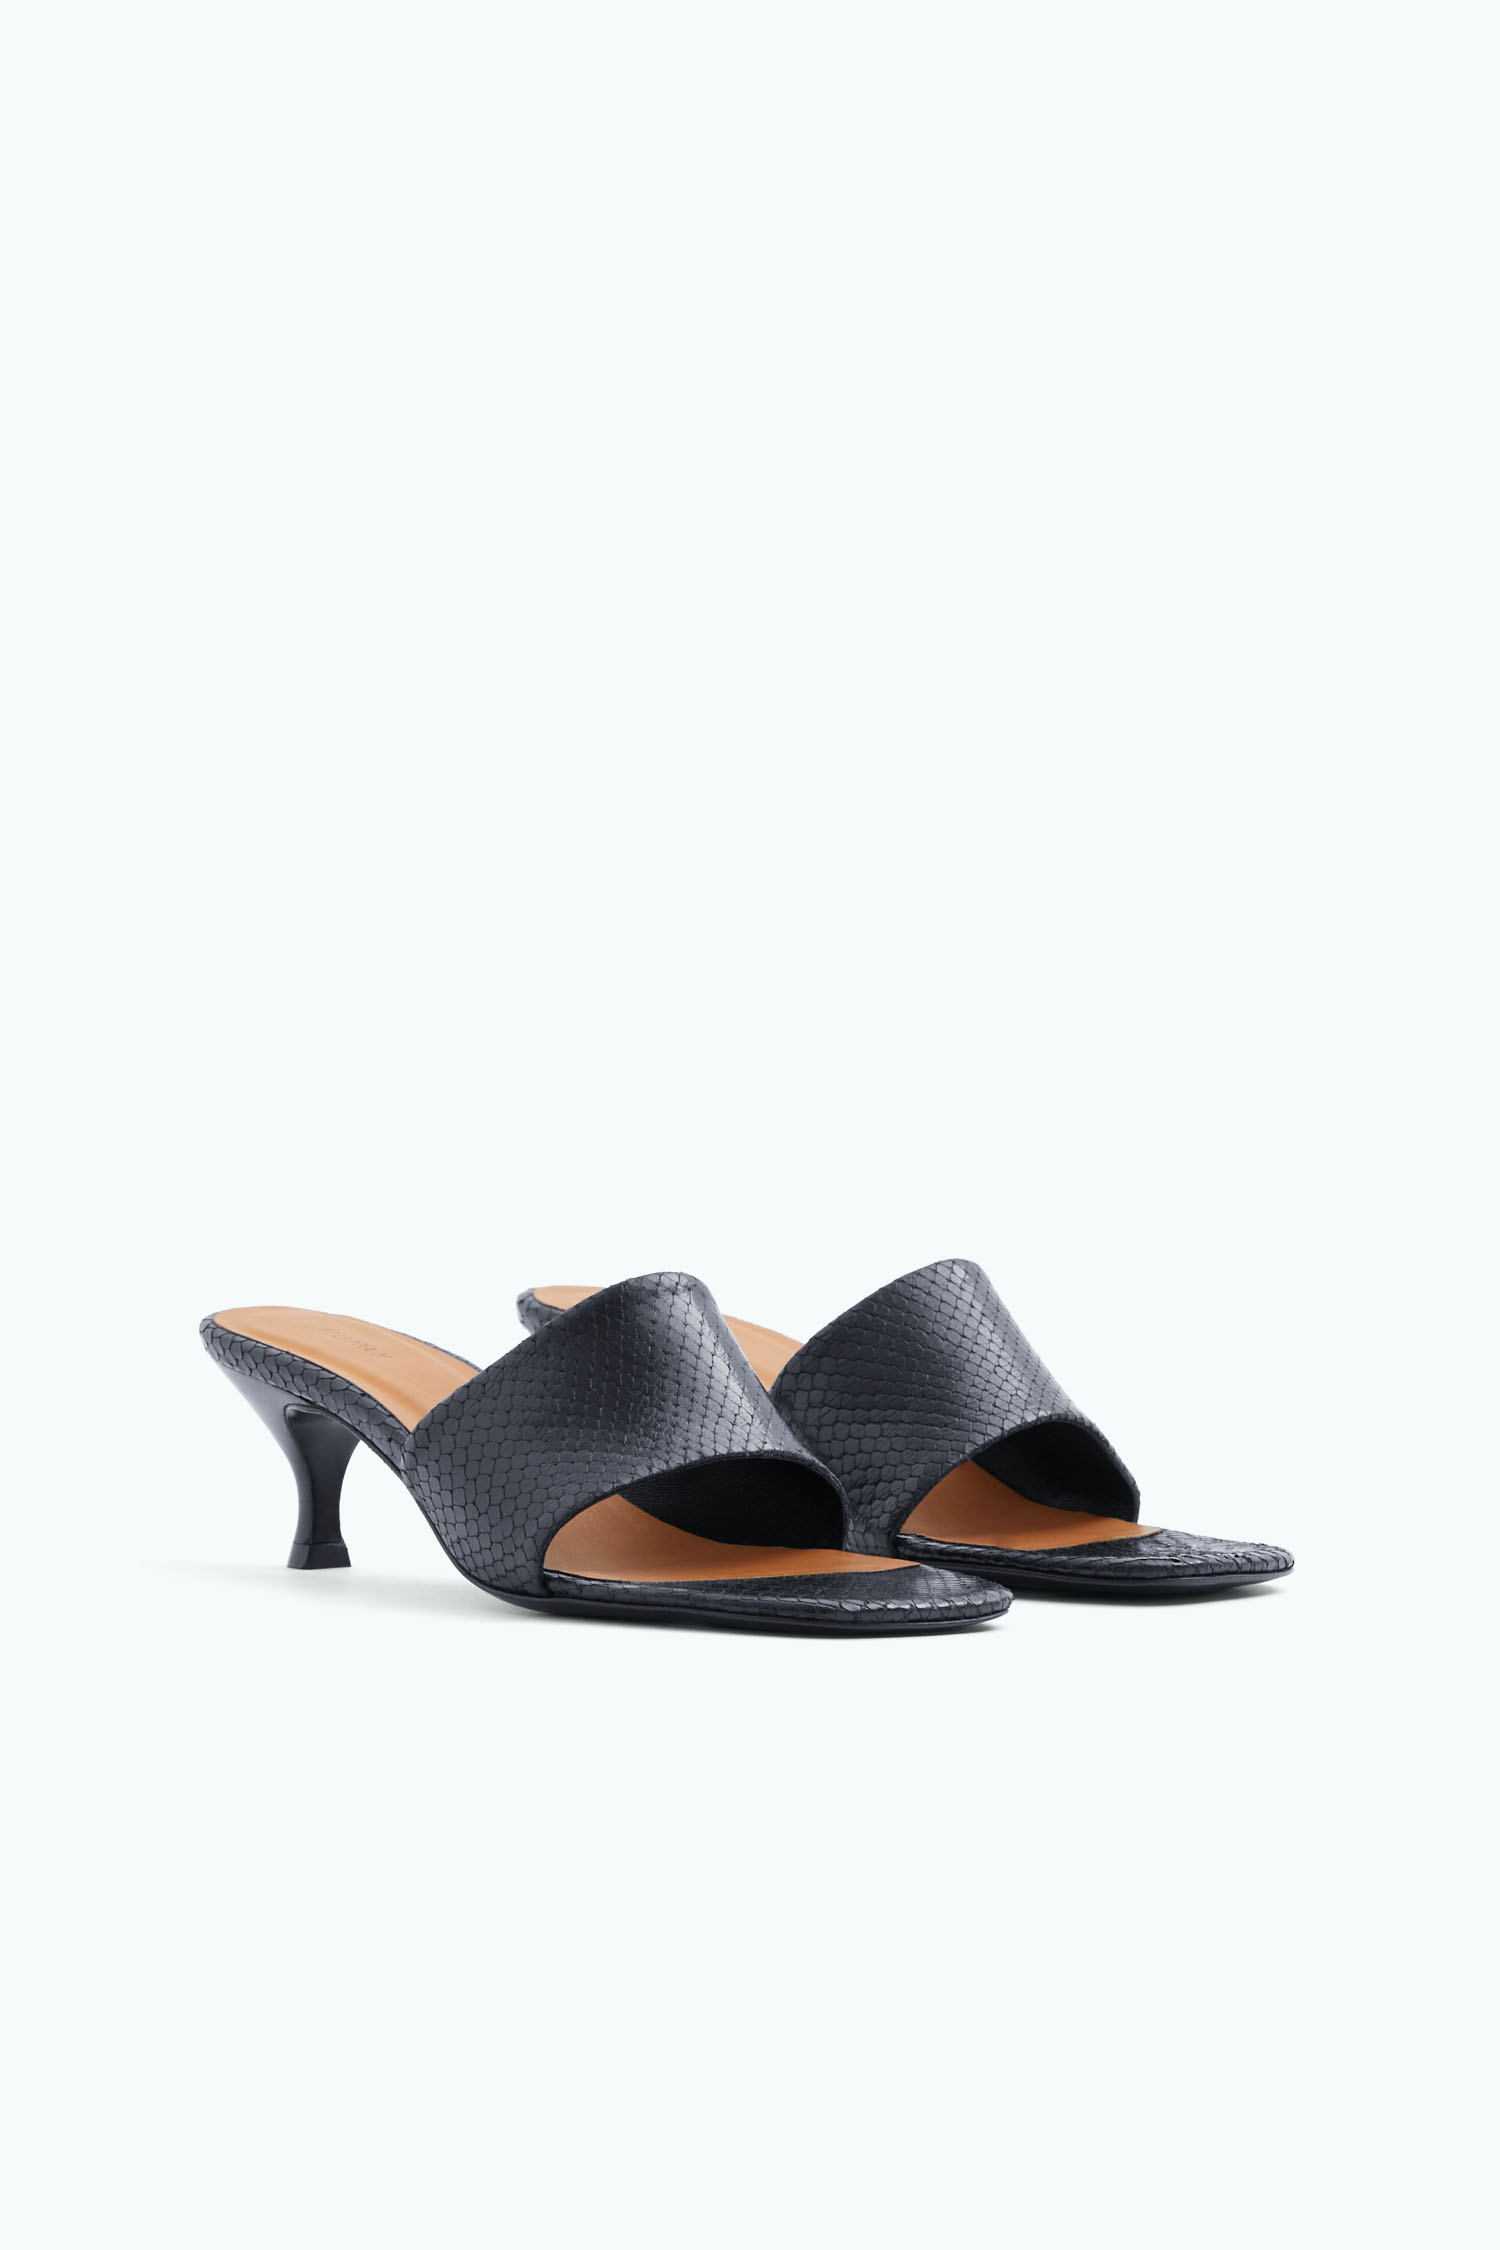 Shop Filippa K Strappy Sandals In Black